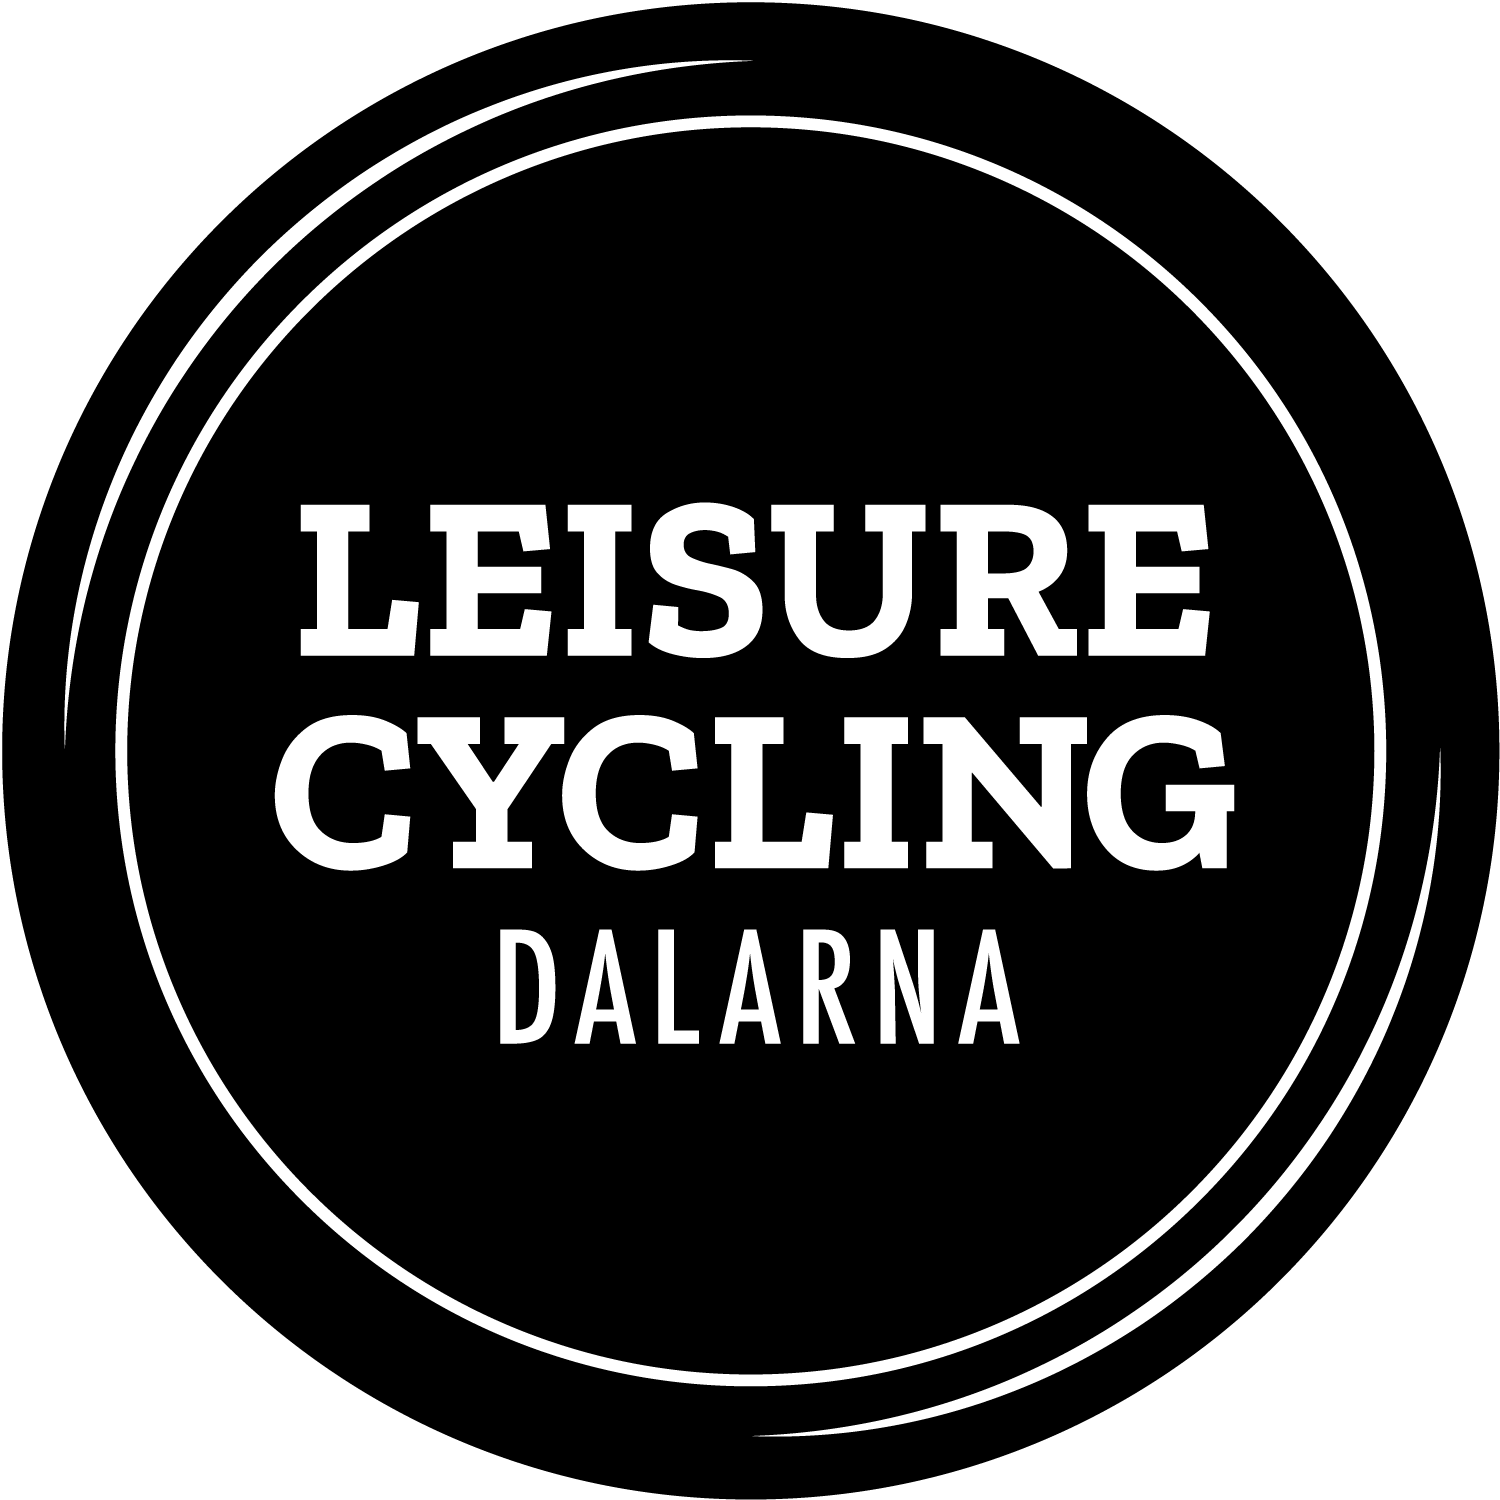 Leisure cycling logo: Läs mer om härliga cykelturer i Dalarna.